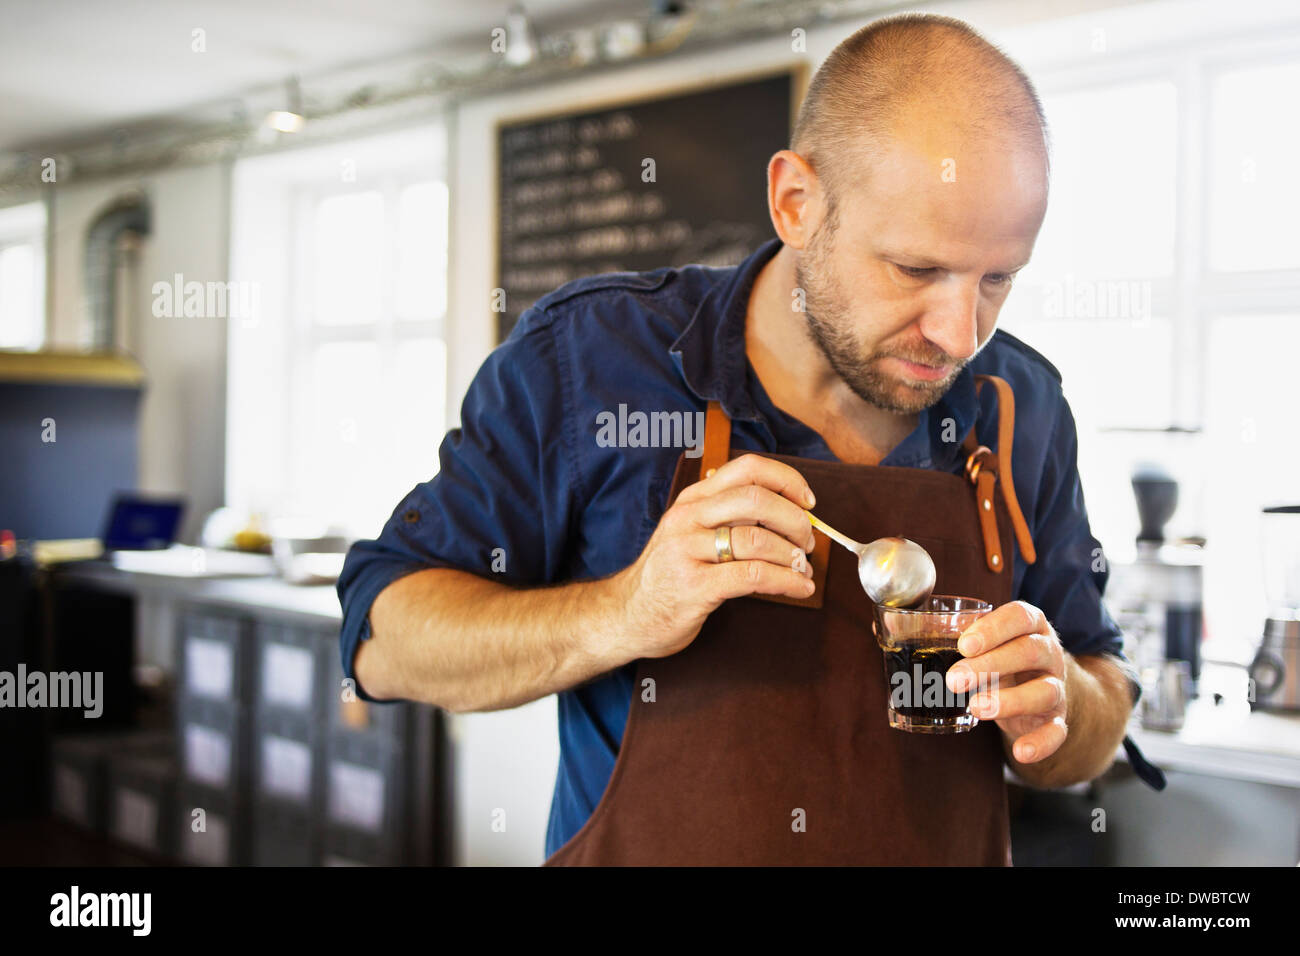 Male barista stirring coffee glass in coffee bar Stock Photo